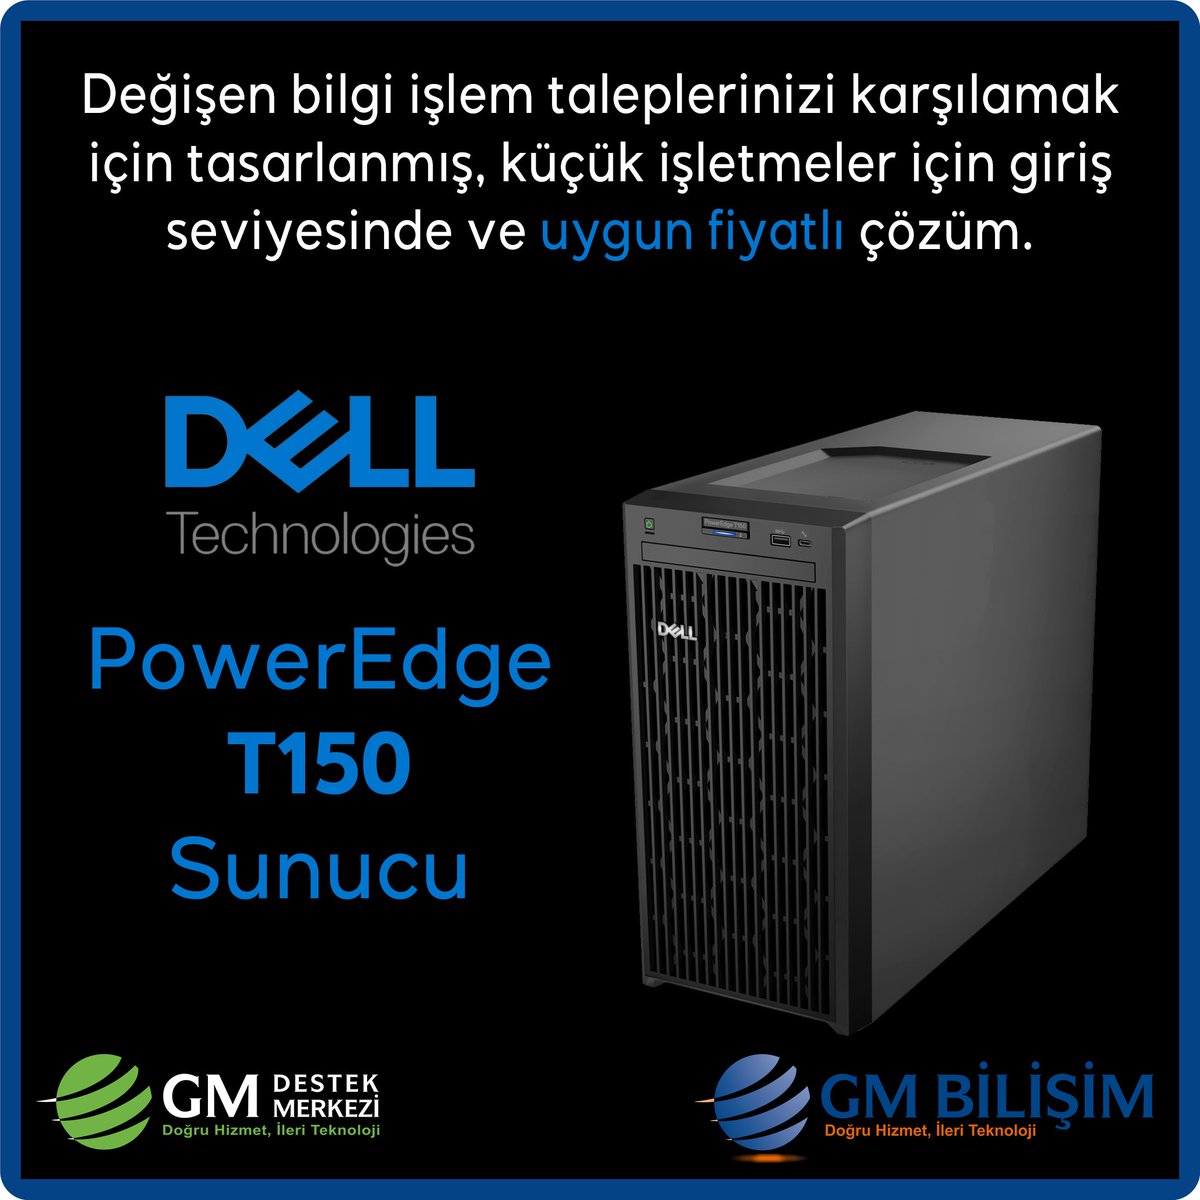 Değişen sunucu ihtiyaçlarınıza cevap verebilecek, uygun maliyetli, küçük işletmeler için tasarlanmış Dell PowerEdge T150 Sunucu... #Dell #T150 #Server #PowerEdge